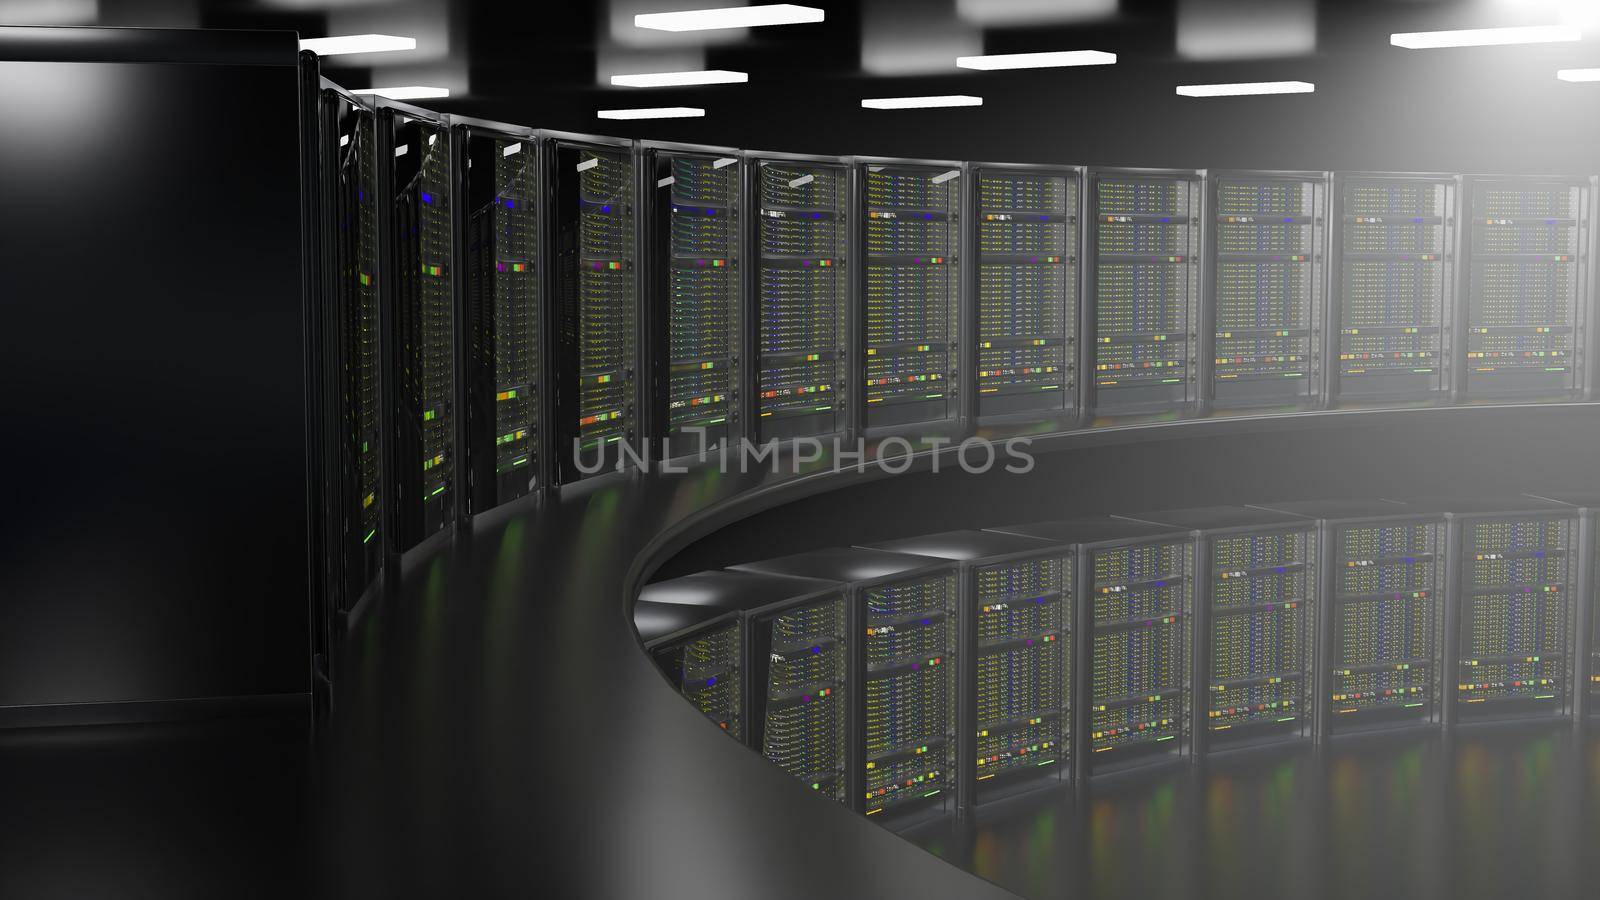 Server. Server racks in server room cloud data center. Datacenter hardware cluster. Backup, hosting, mainframe, mining, farm and computer rack with storage information. 3d illustration